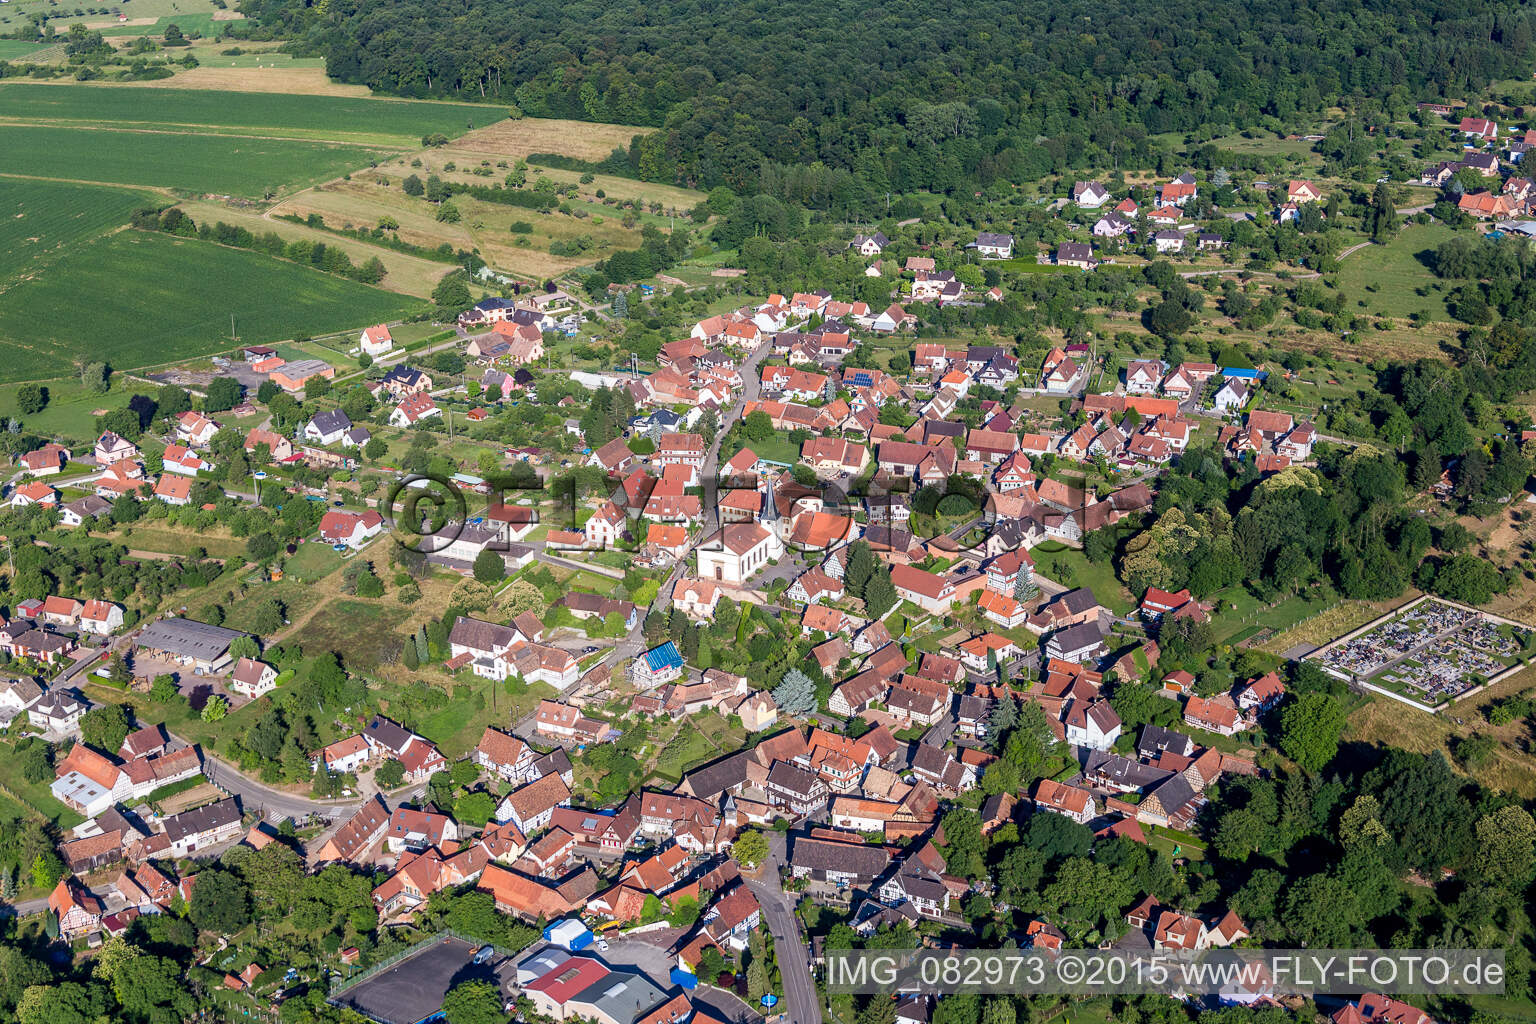 Luftbild von Dorf - Ansicht am Rande von landwirtschaftlichen Feldern und Nutzflächen in Lampertsloch in Grand Est im Bundesland Bas-Rhin, Frankreich